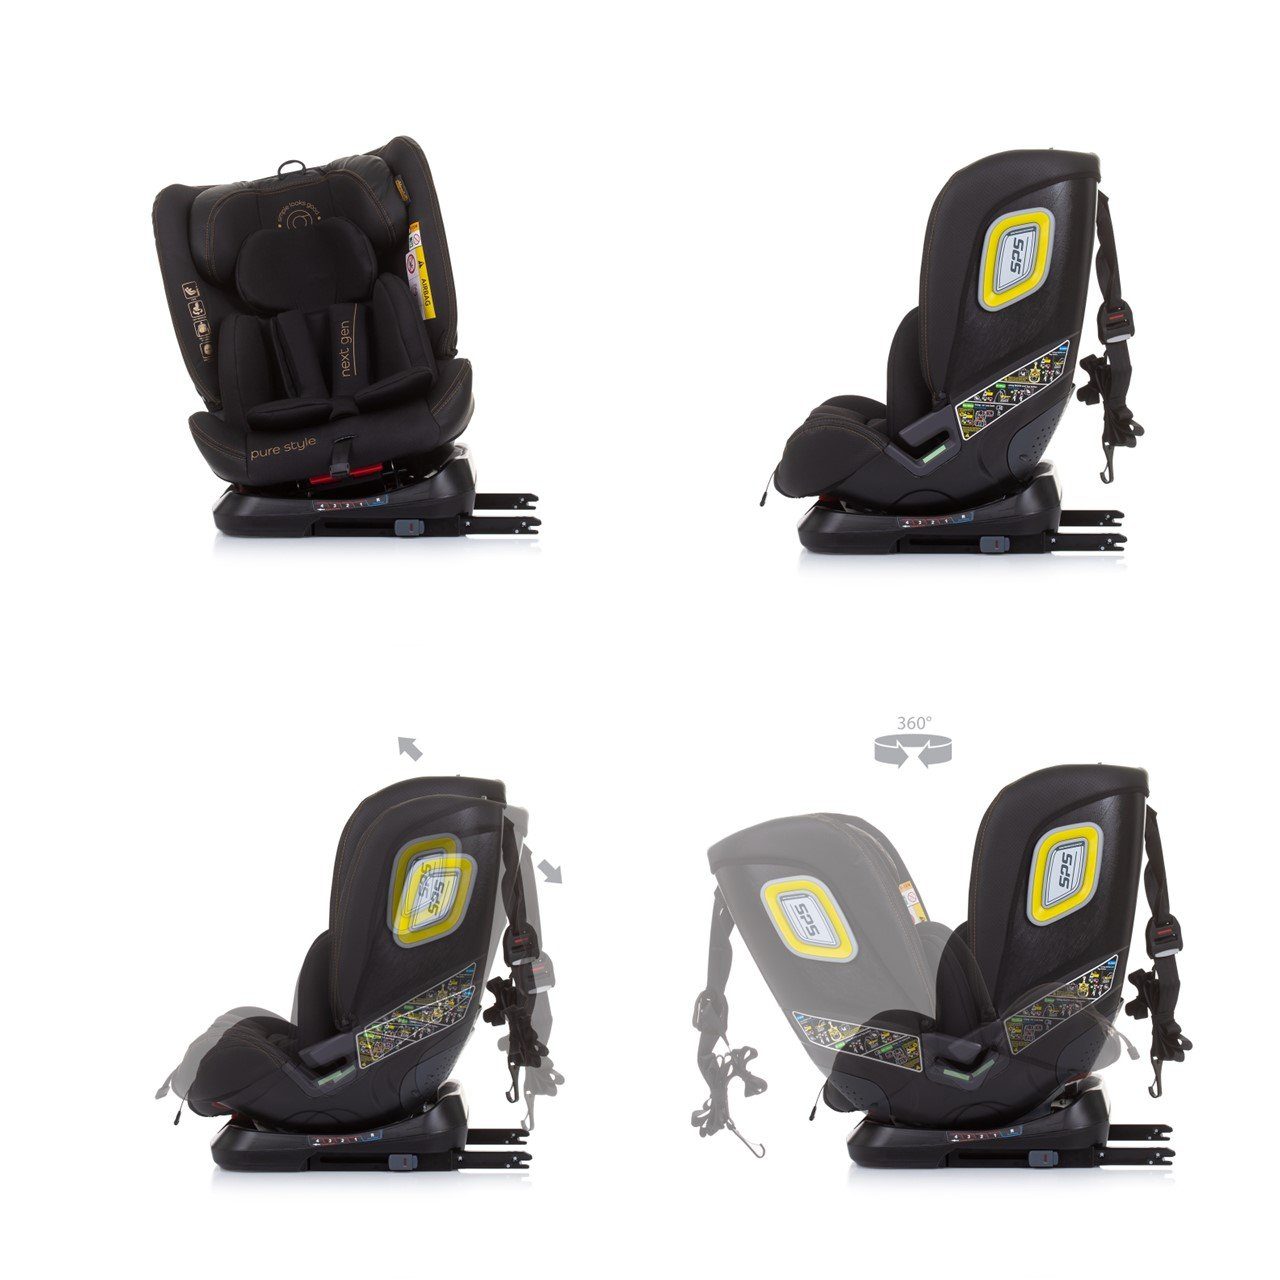 Chipolino Autokindersitz Kindersitz i-Size Next 360° schwarz bis: drehbar Reboard Isofix - cm) 150 (40 36 kg, Gen